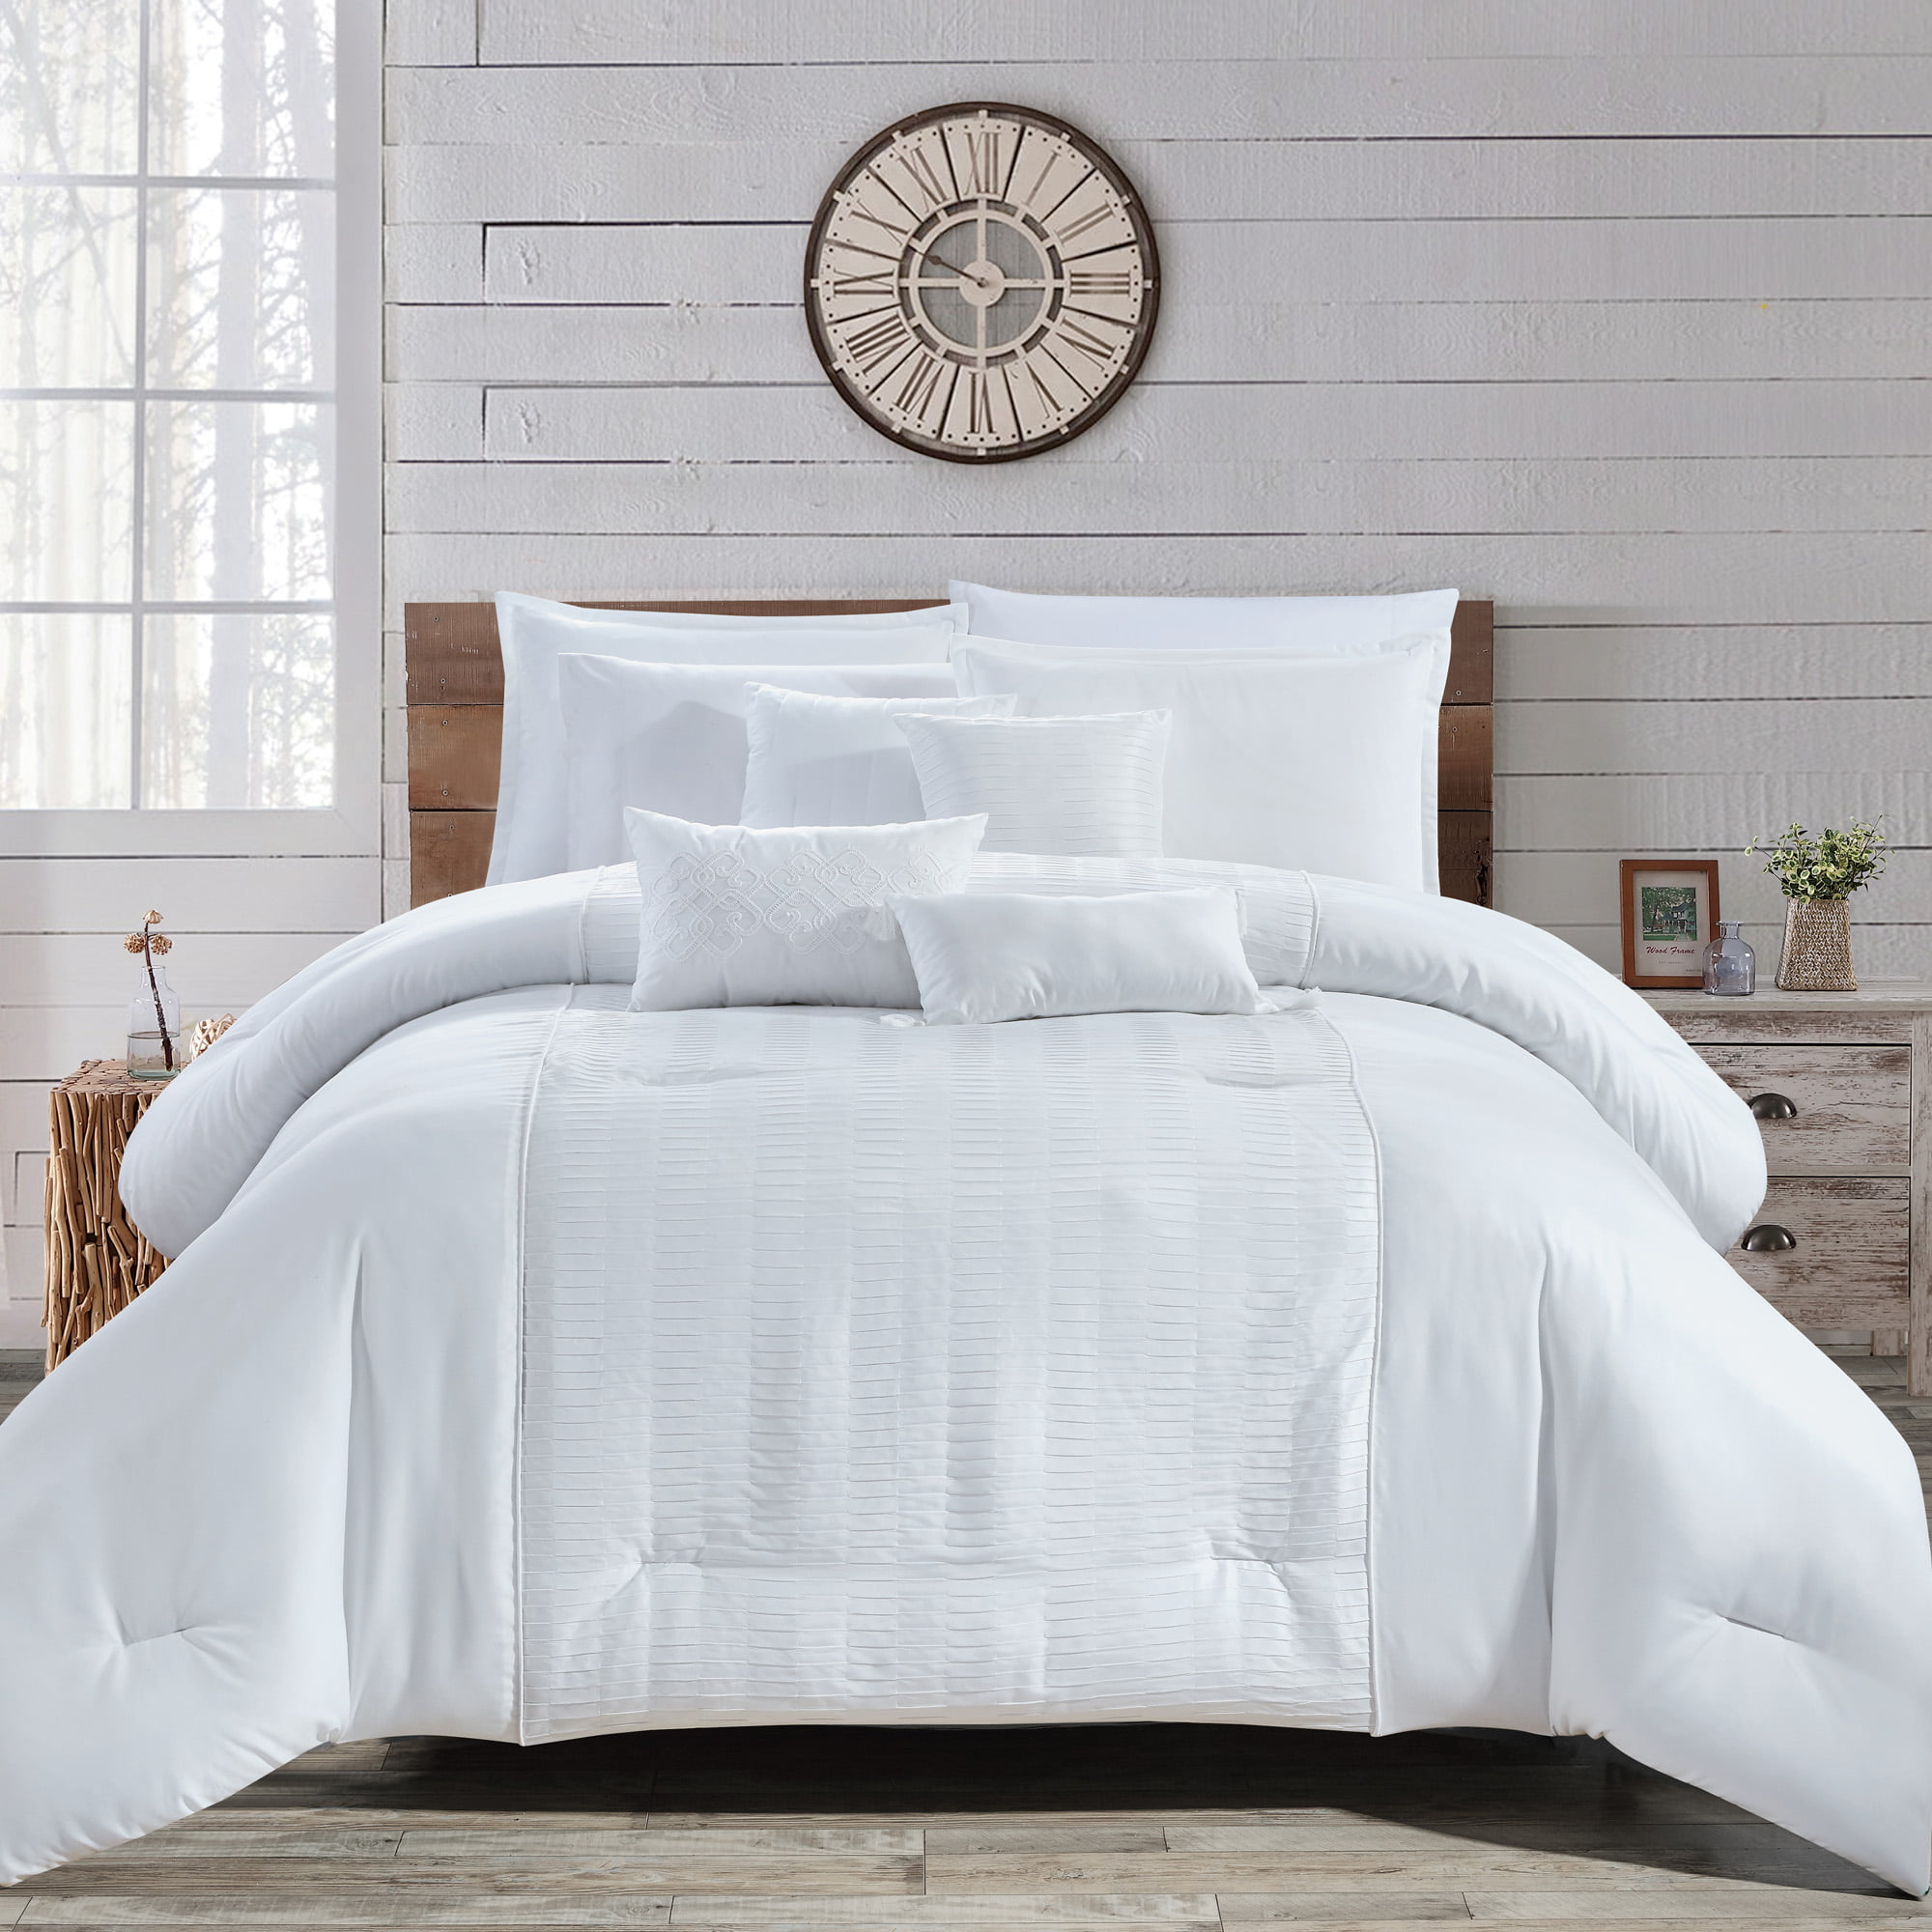 Hgmart Bedding Comforter Set Bed In A Bag 7 Piece Luxury Microfiber Bedding Sets Oversized Bedroom Comforters King Cal King Size White Walmart Com Walmart Com